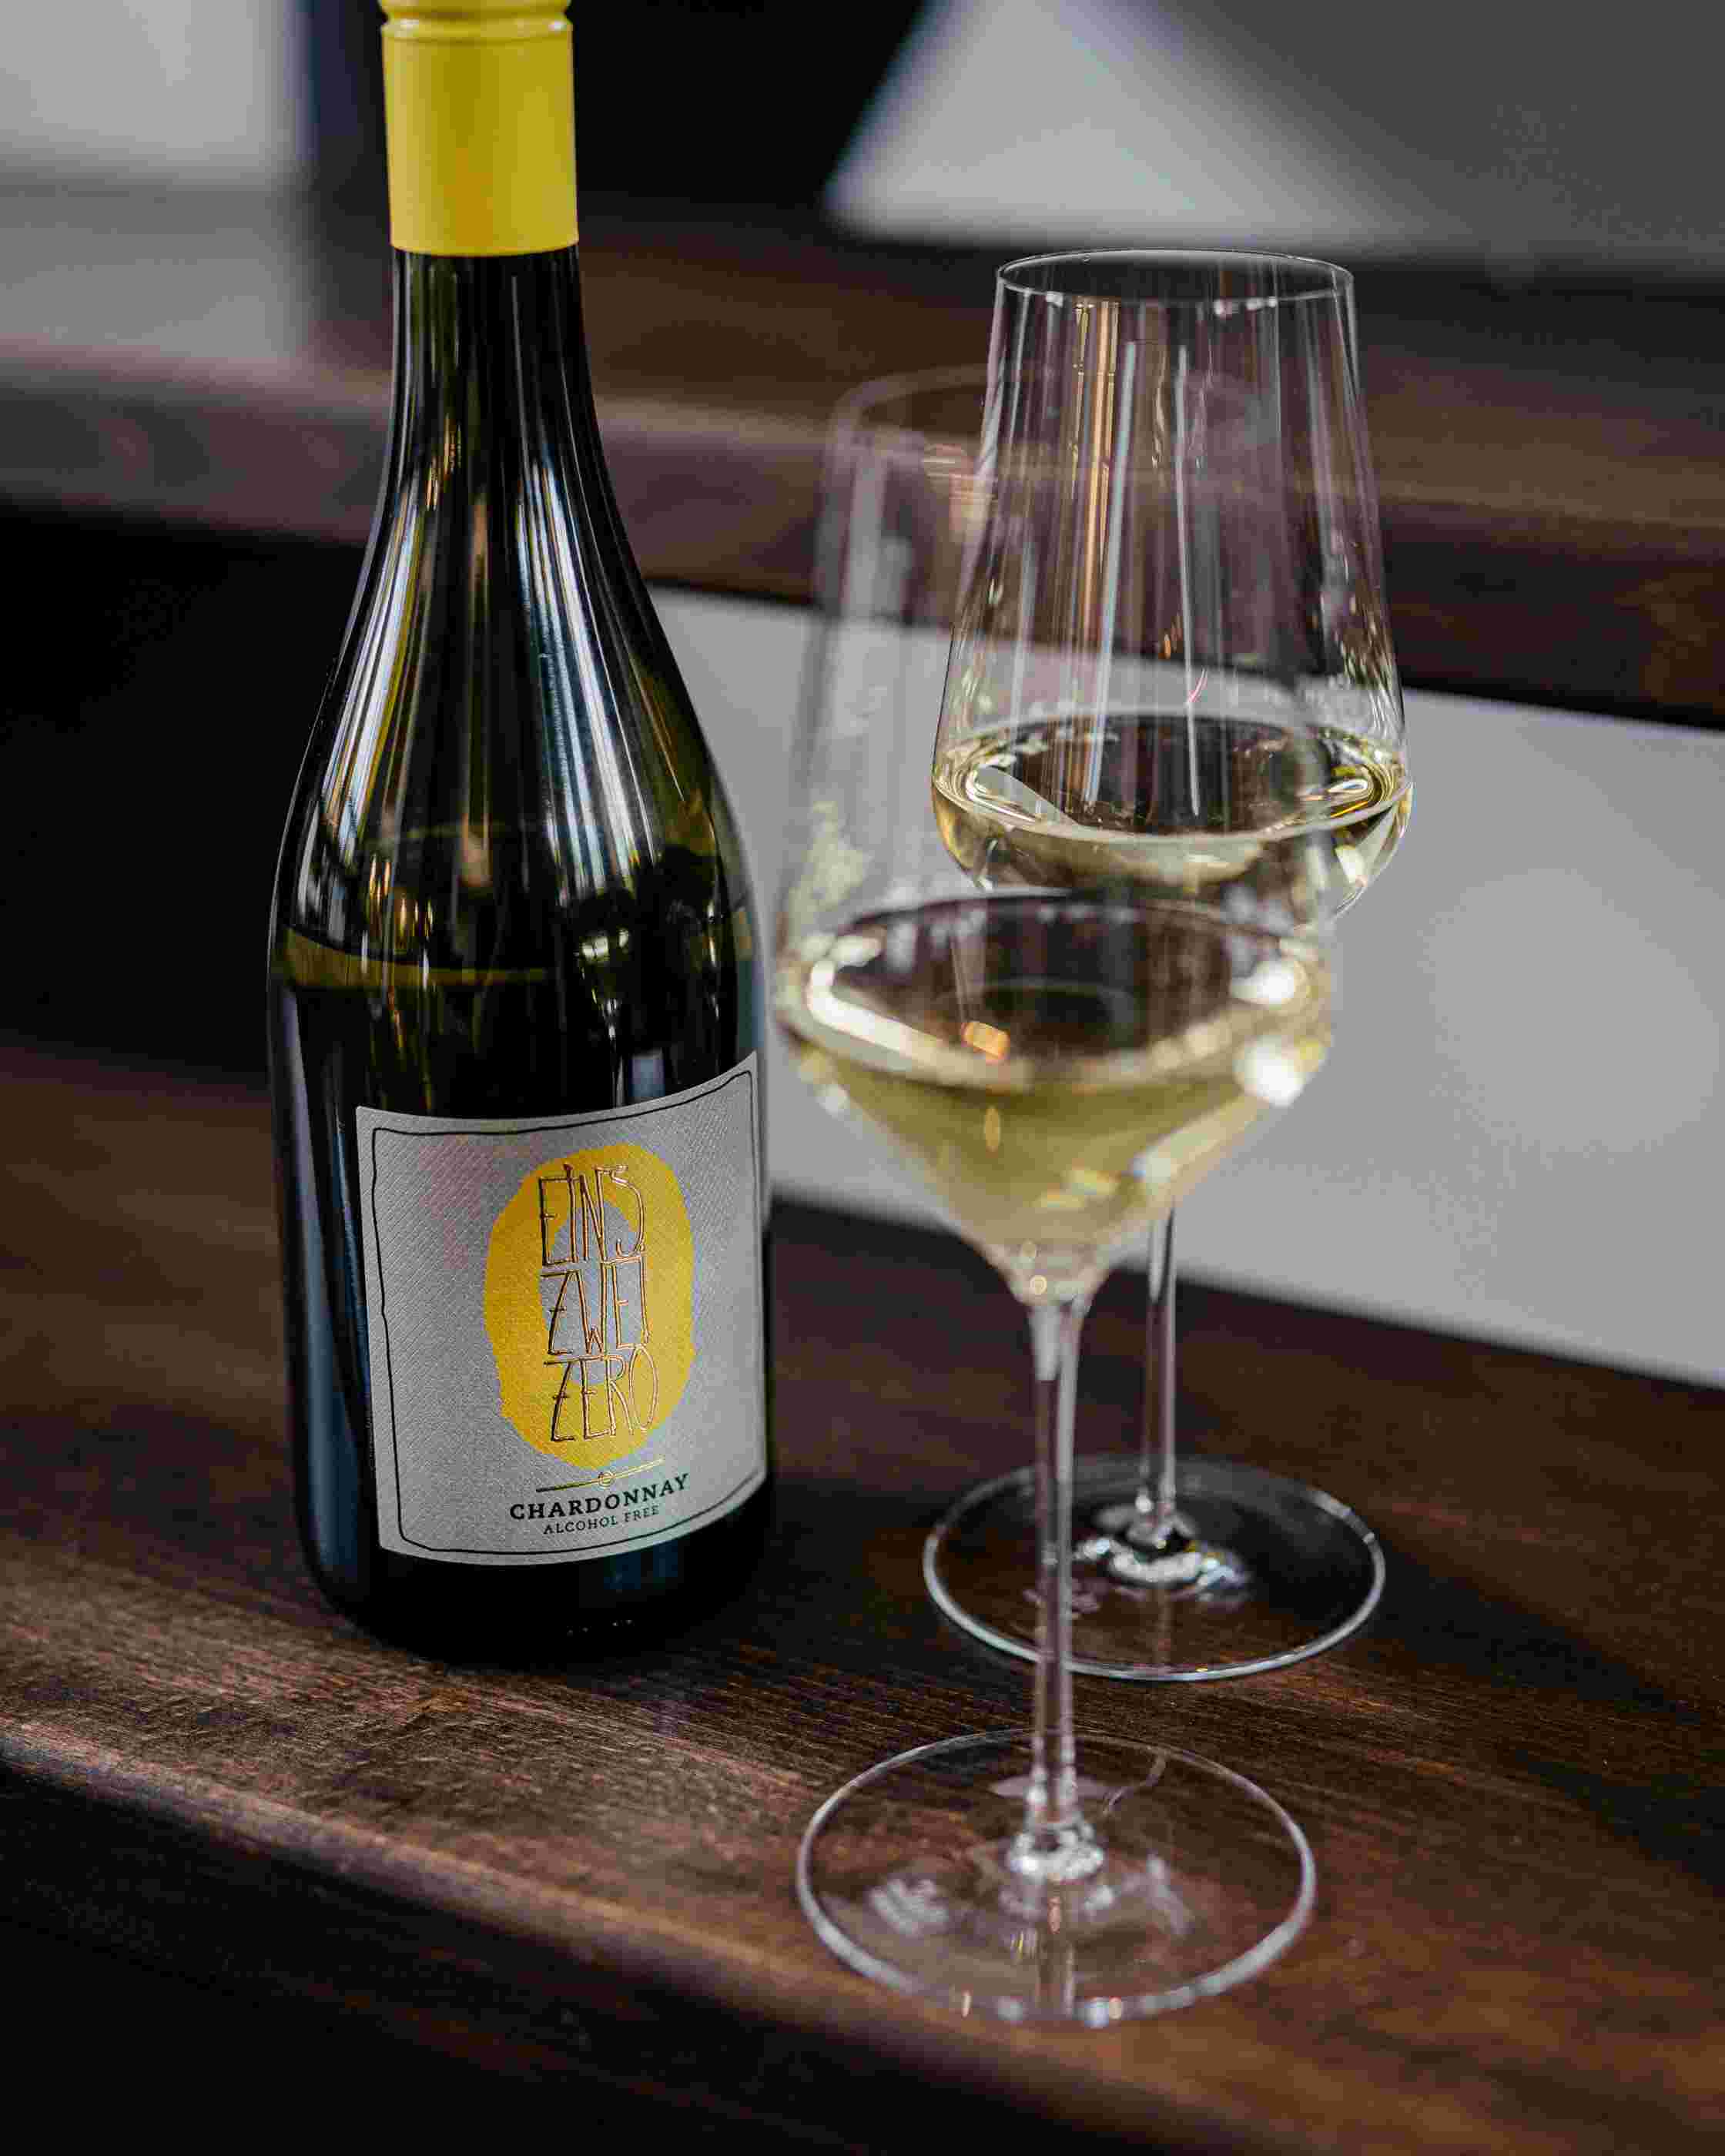 Sfeerfoto van een fles Leitz Eins-Zwei-Zero Chardonnay. Rechts staan twee wijnglazen gevuld met de Chardonnay. 